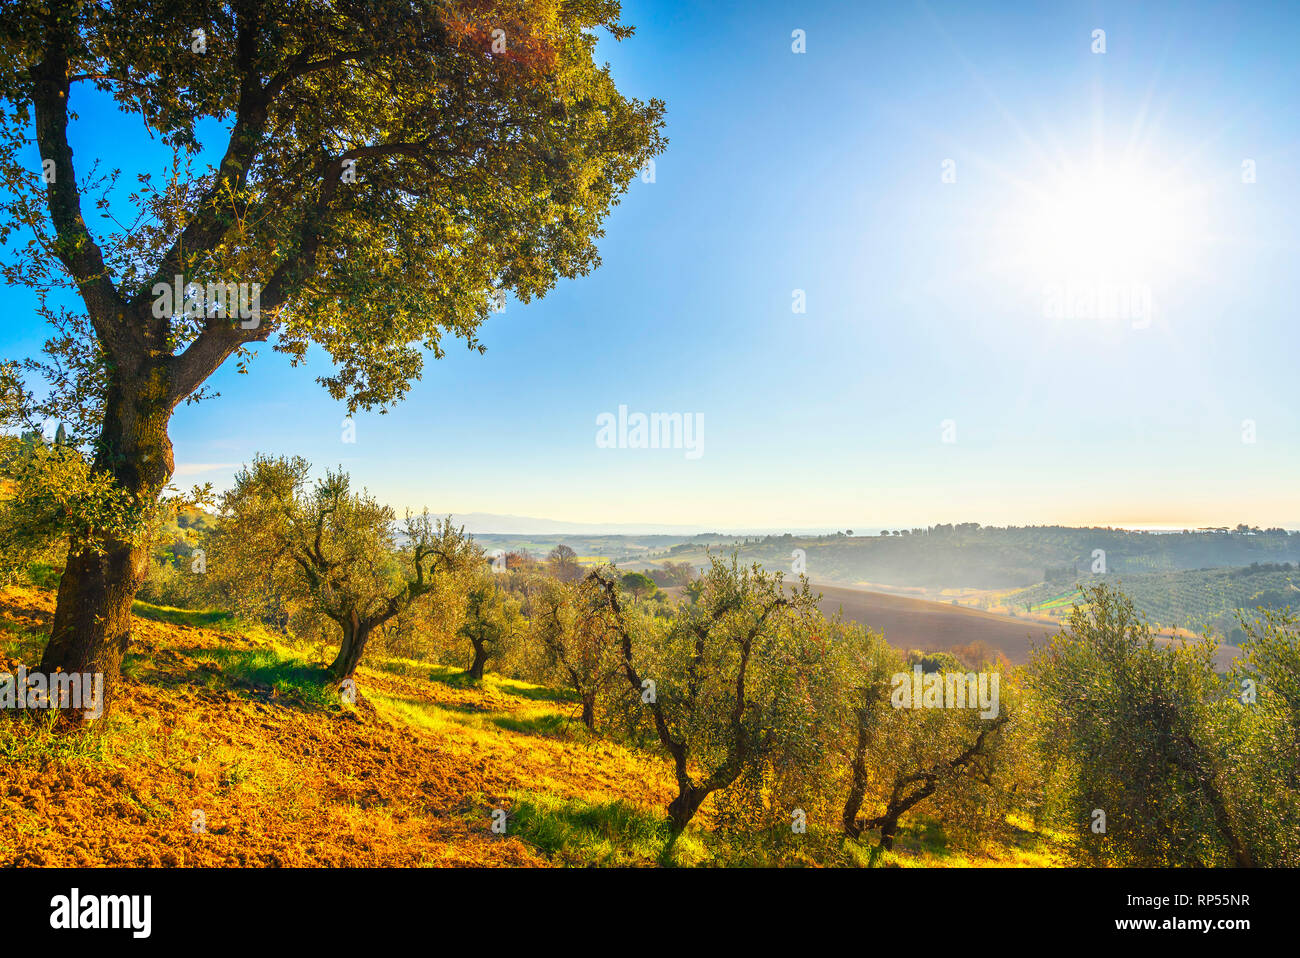 Maremma auf dem Land Panoramaaussicht, Olivenbäume, sanften Hügeln und grünen Felder. Meer am Horizont. Casale Marittimo, Pisa, Toskana Italien Europa. Stockfoto